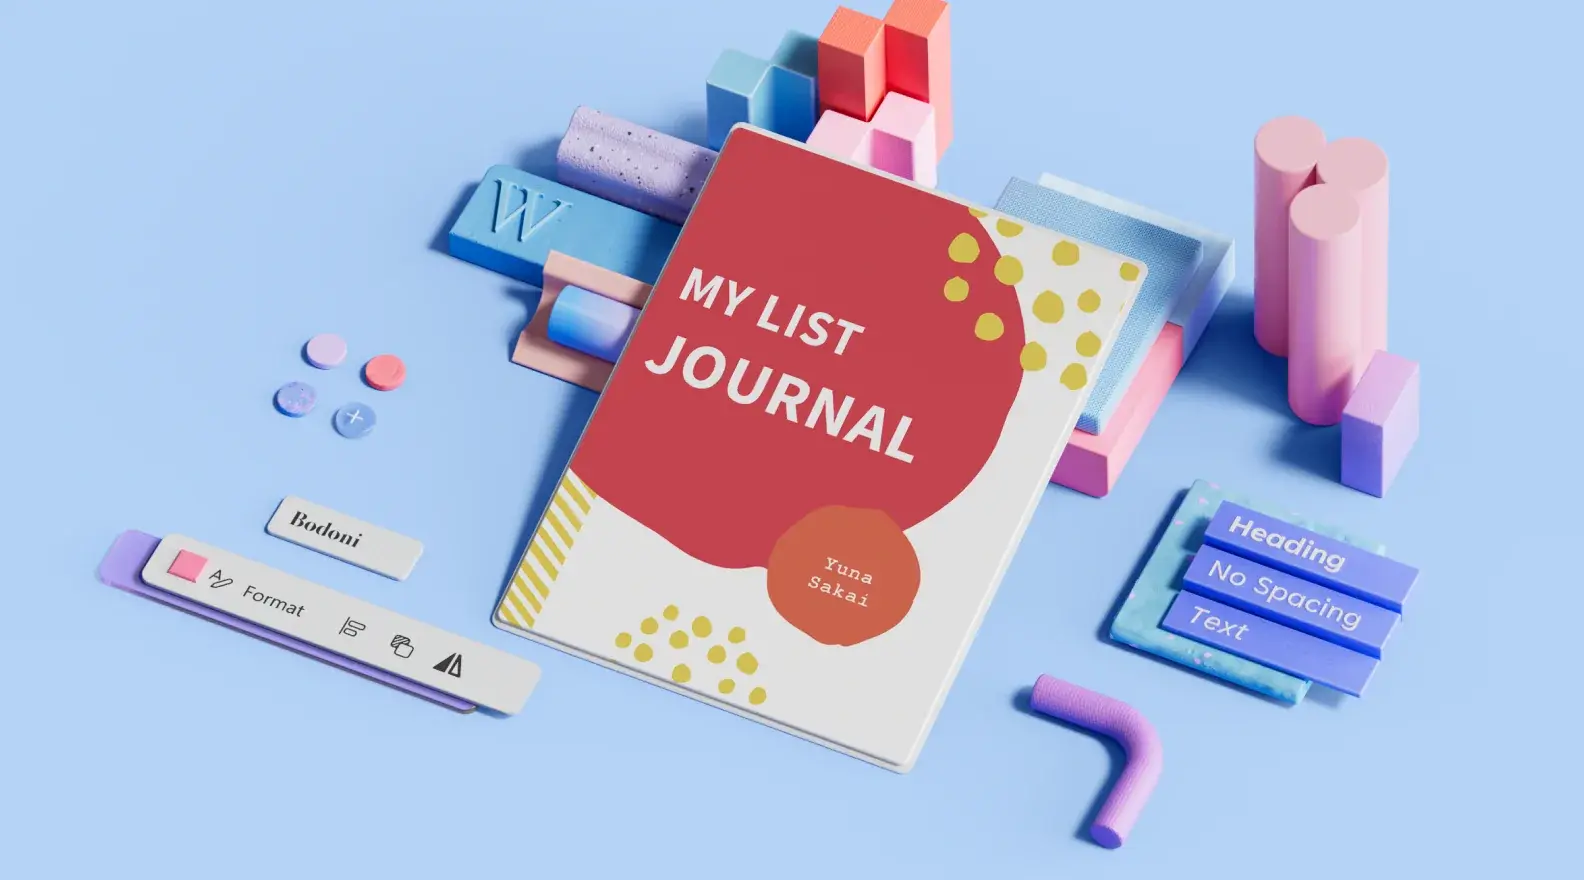 Шаблон за списание в стил „списък“, заобиколен от 3D елементи на дизайна